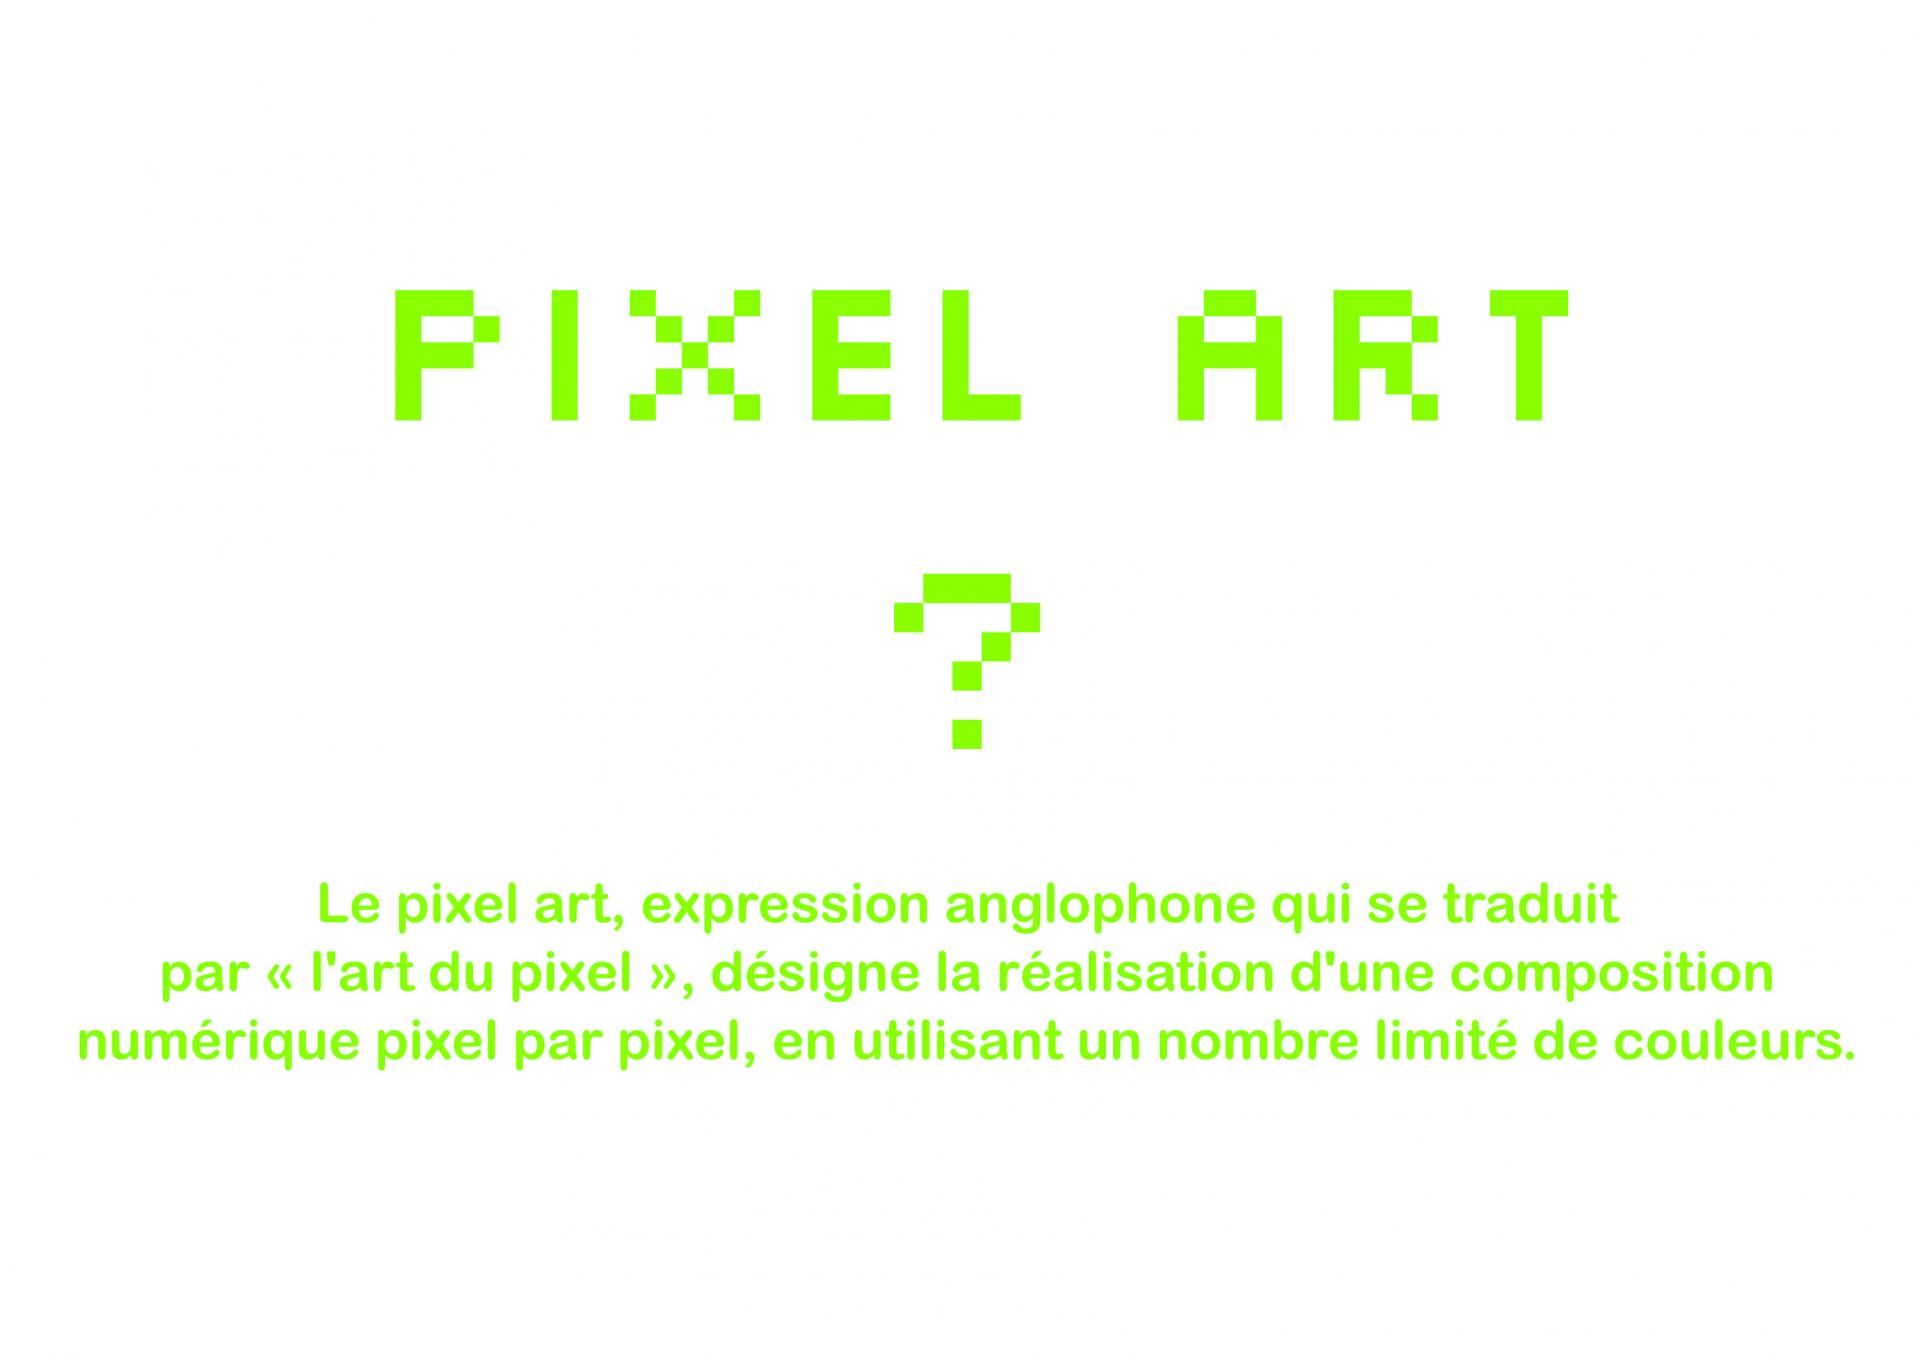 Le pixel art, terme anglophone qui se traduit par l'art du pixel, désigne la réalisation d'une composition numérique pixel par pixel, en limitant le nombre de couleurs.